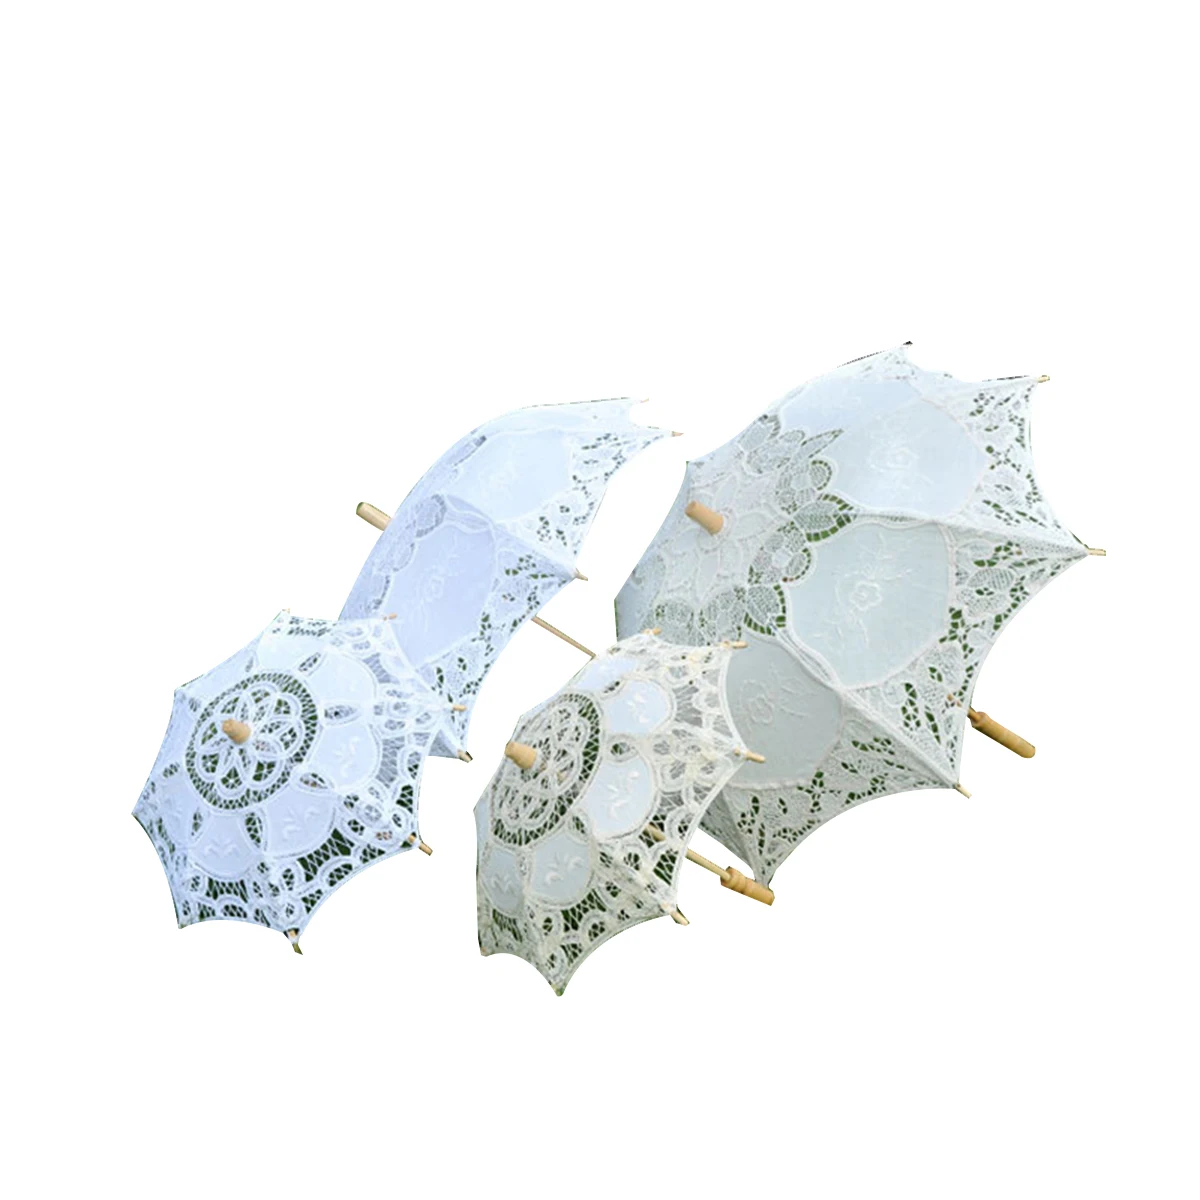 Свадебный зонтик, кружевной хлопковый зонтик с вышивкой ручной работы, Зонтик для свадьбы